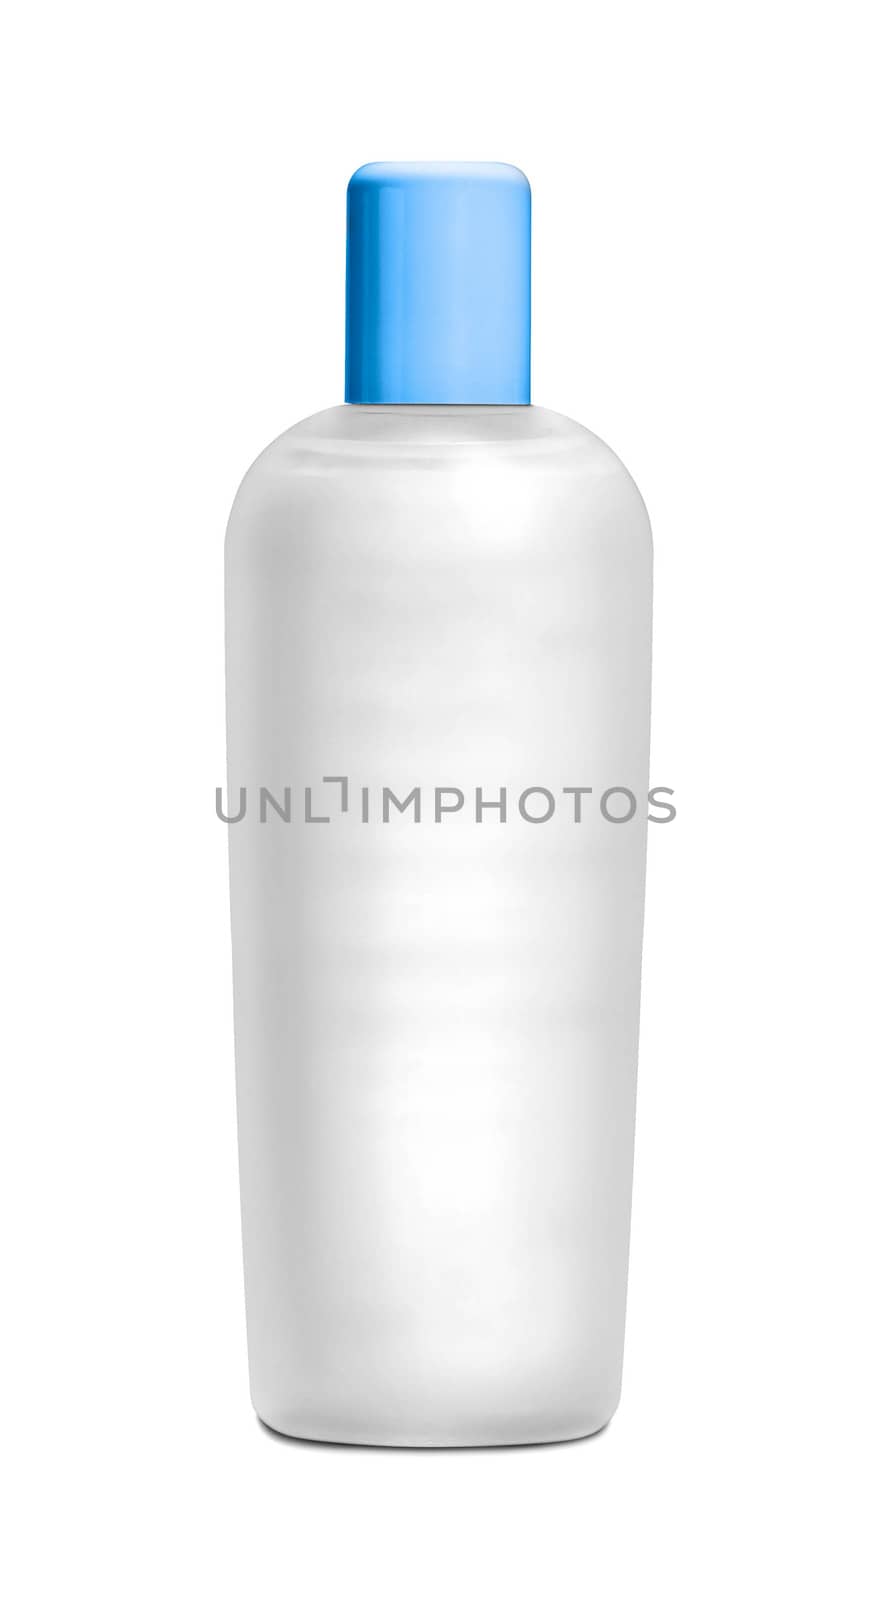 Shampoo bottle isolated on white background